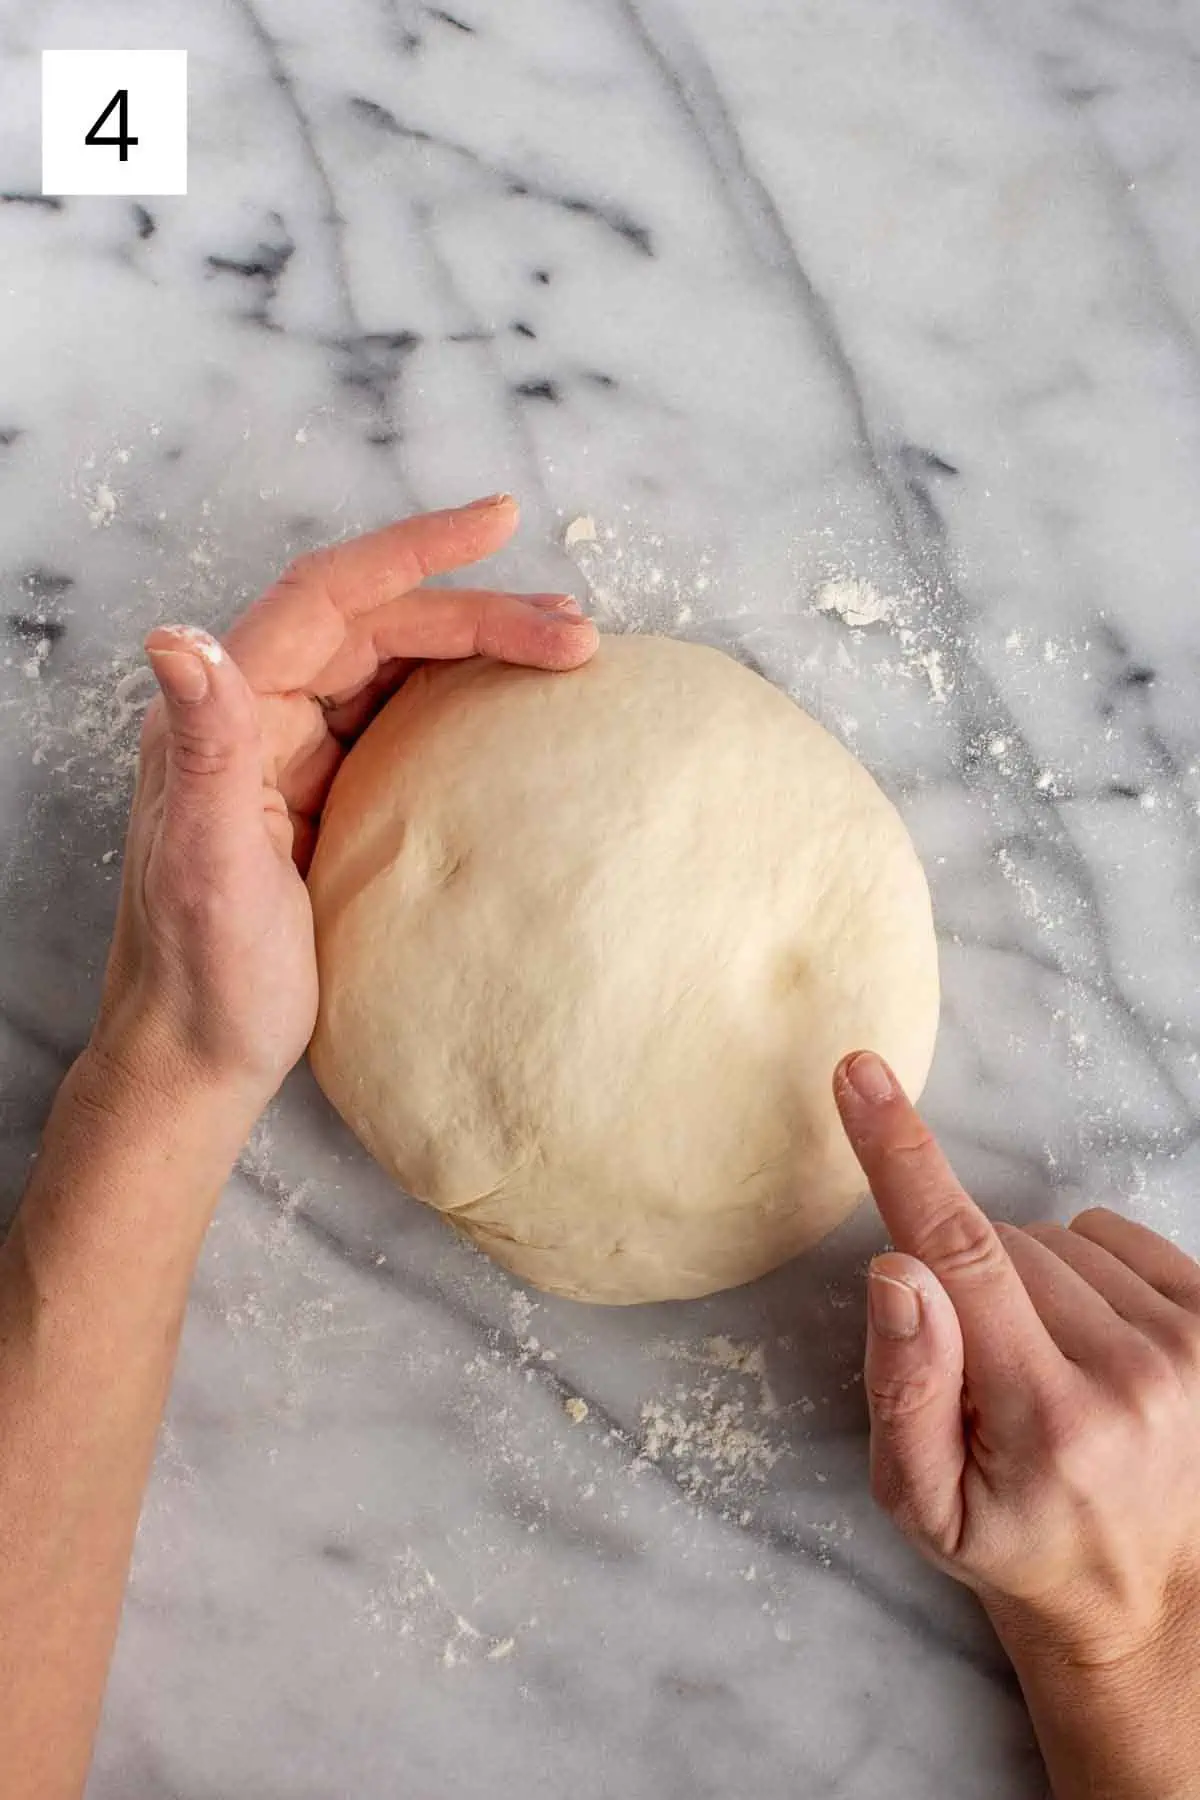 Shaping dough into a ball.